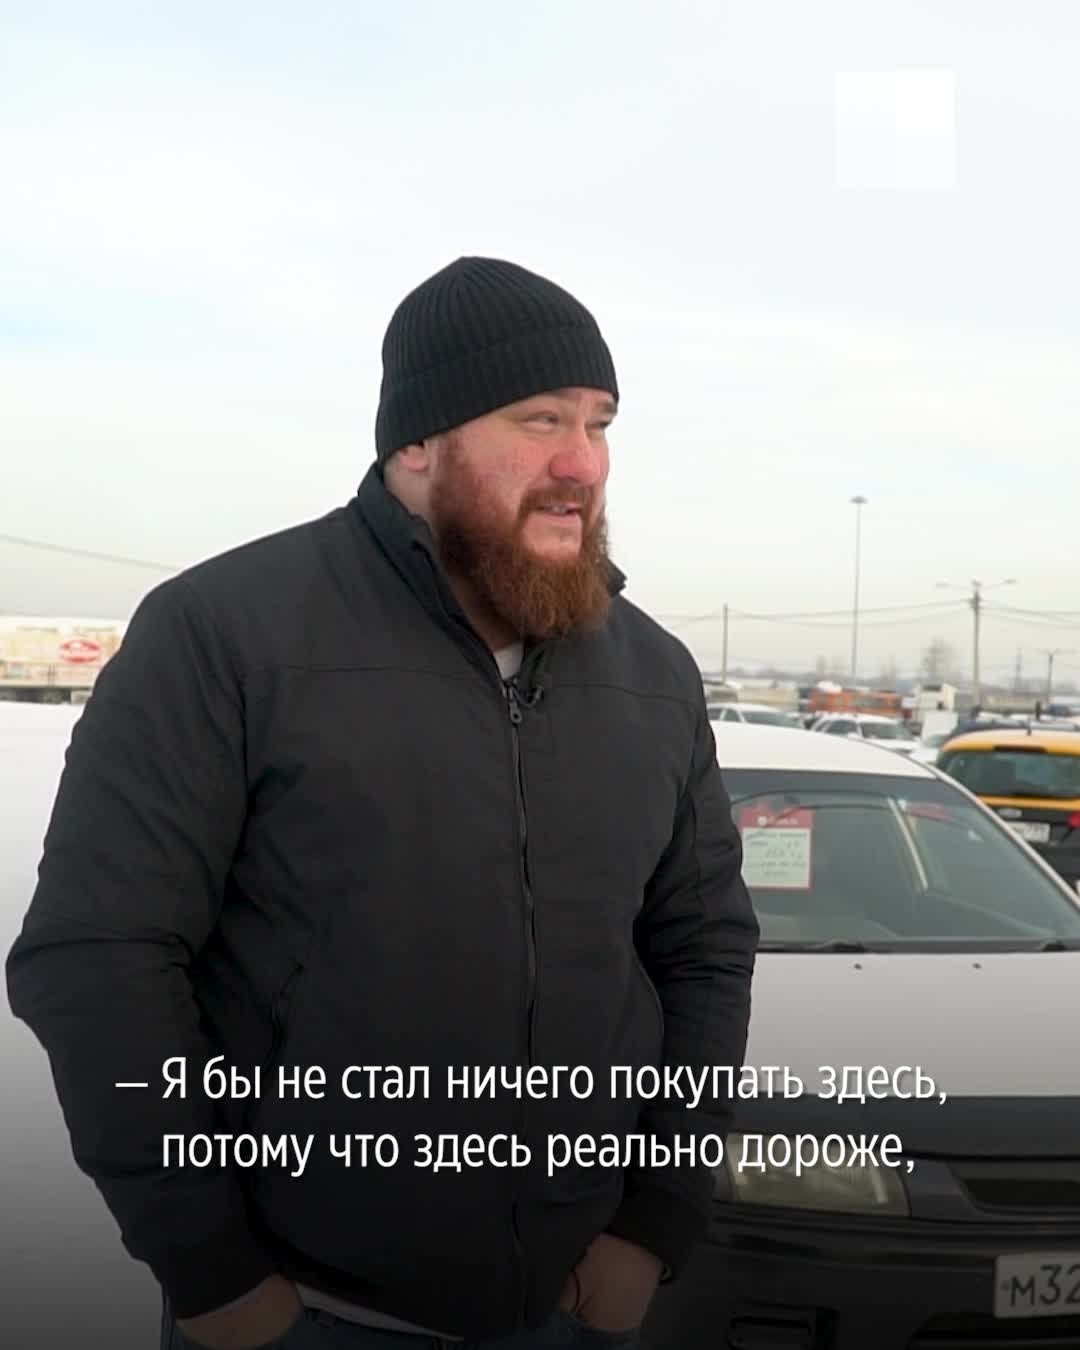 Частное порно красноярск порно видео